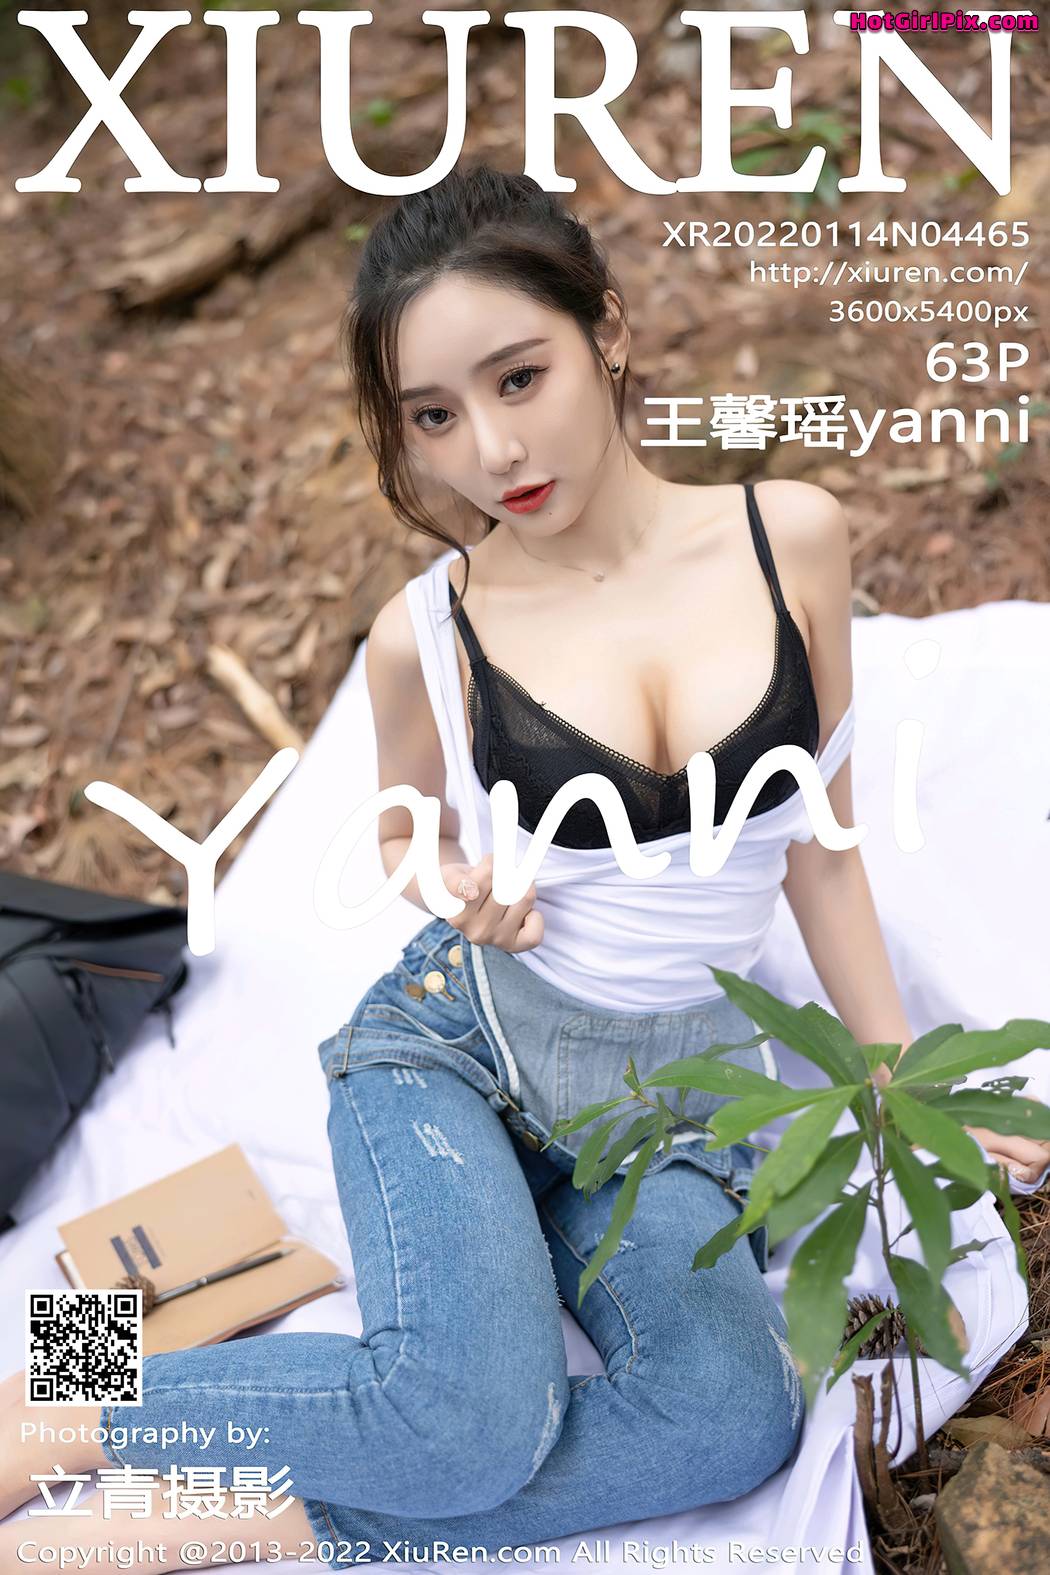 [XIUREN] No.4465 Wang Xin Yao 王馨瑶yanni